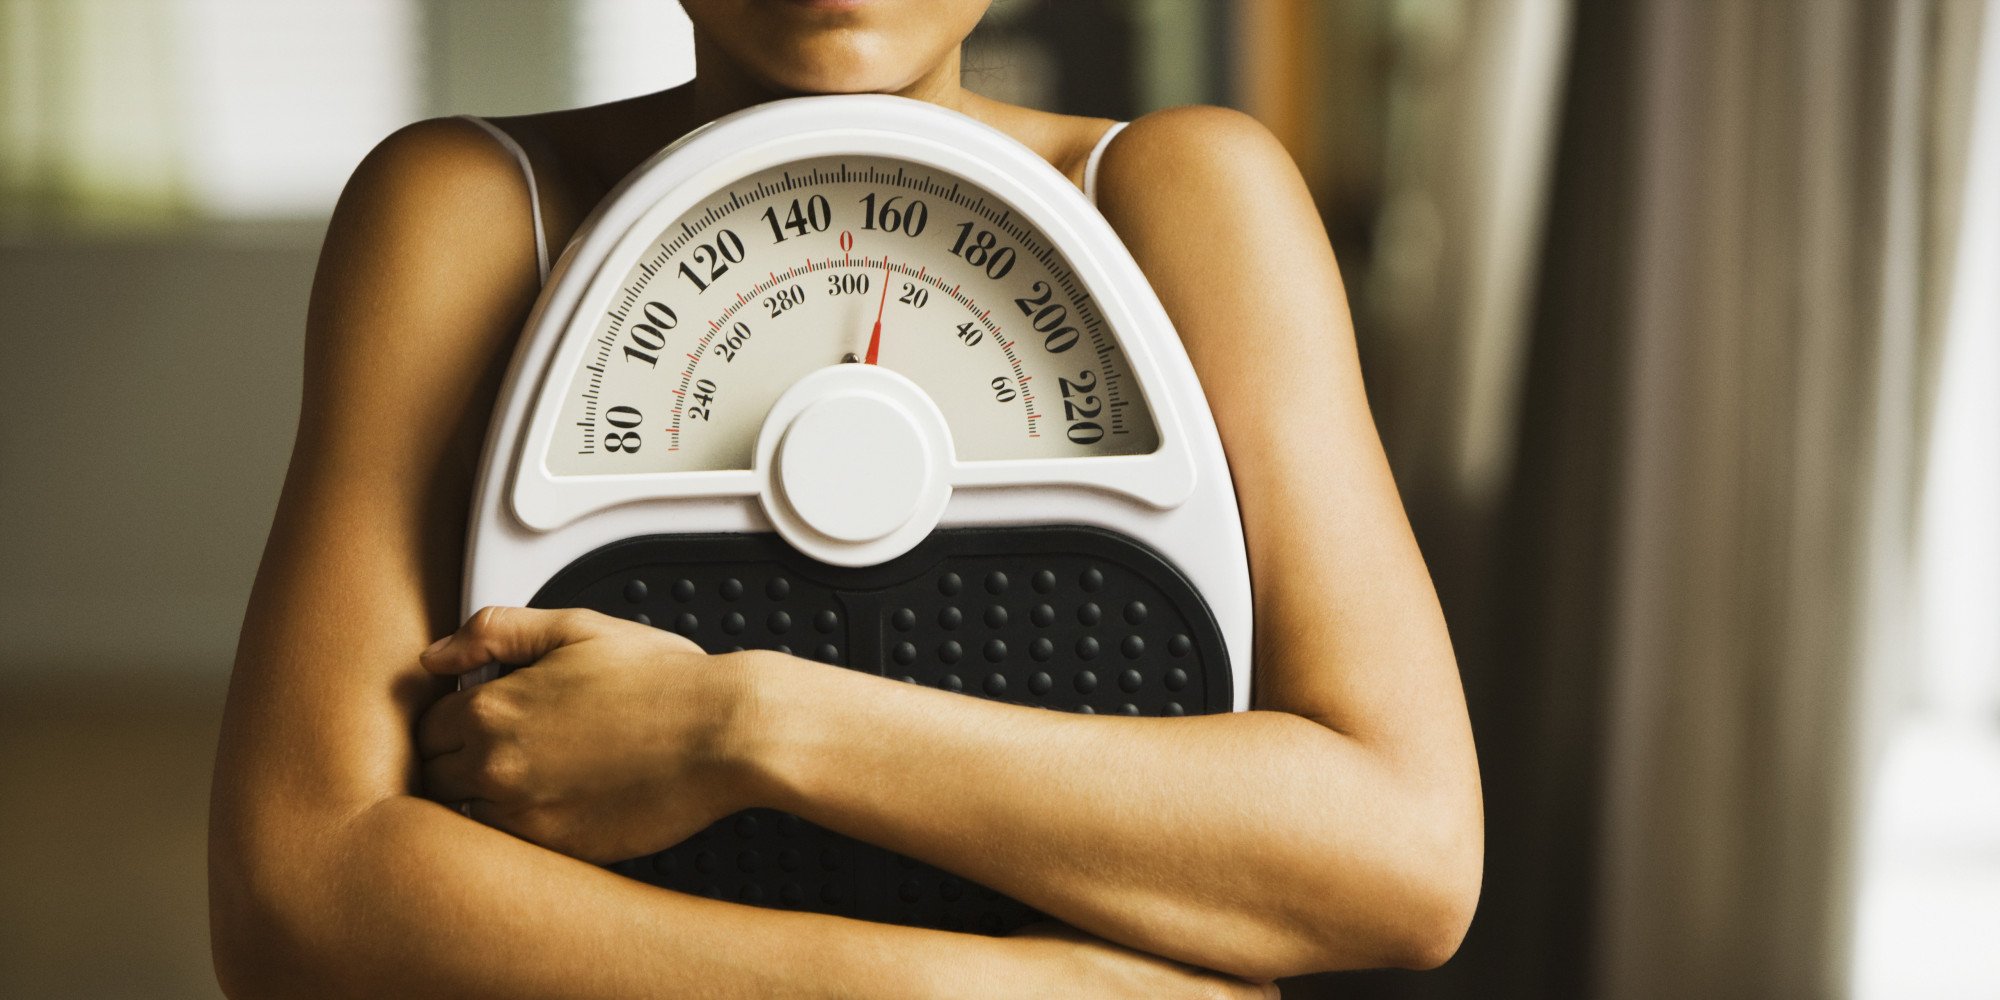 اختصاصية تكشف عن طريقة غير معتادة لفقدان الوزن